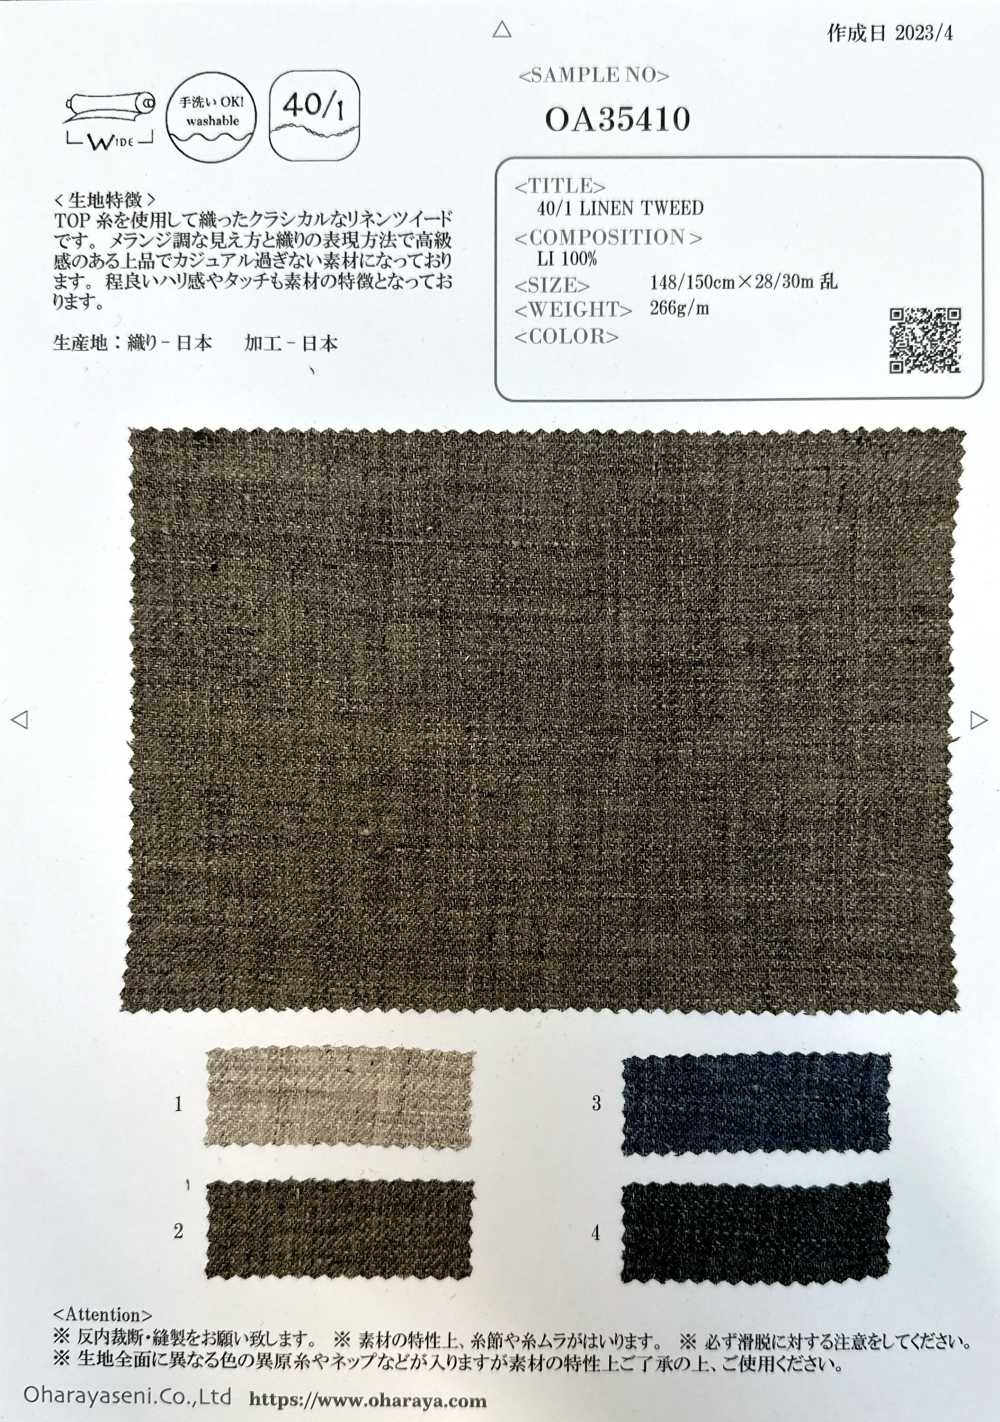 OA35410 40/1 LEINEN-TWEED[Textilgewebe] Oharayaseni